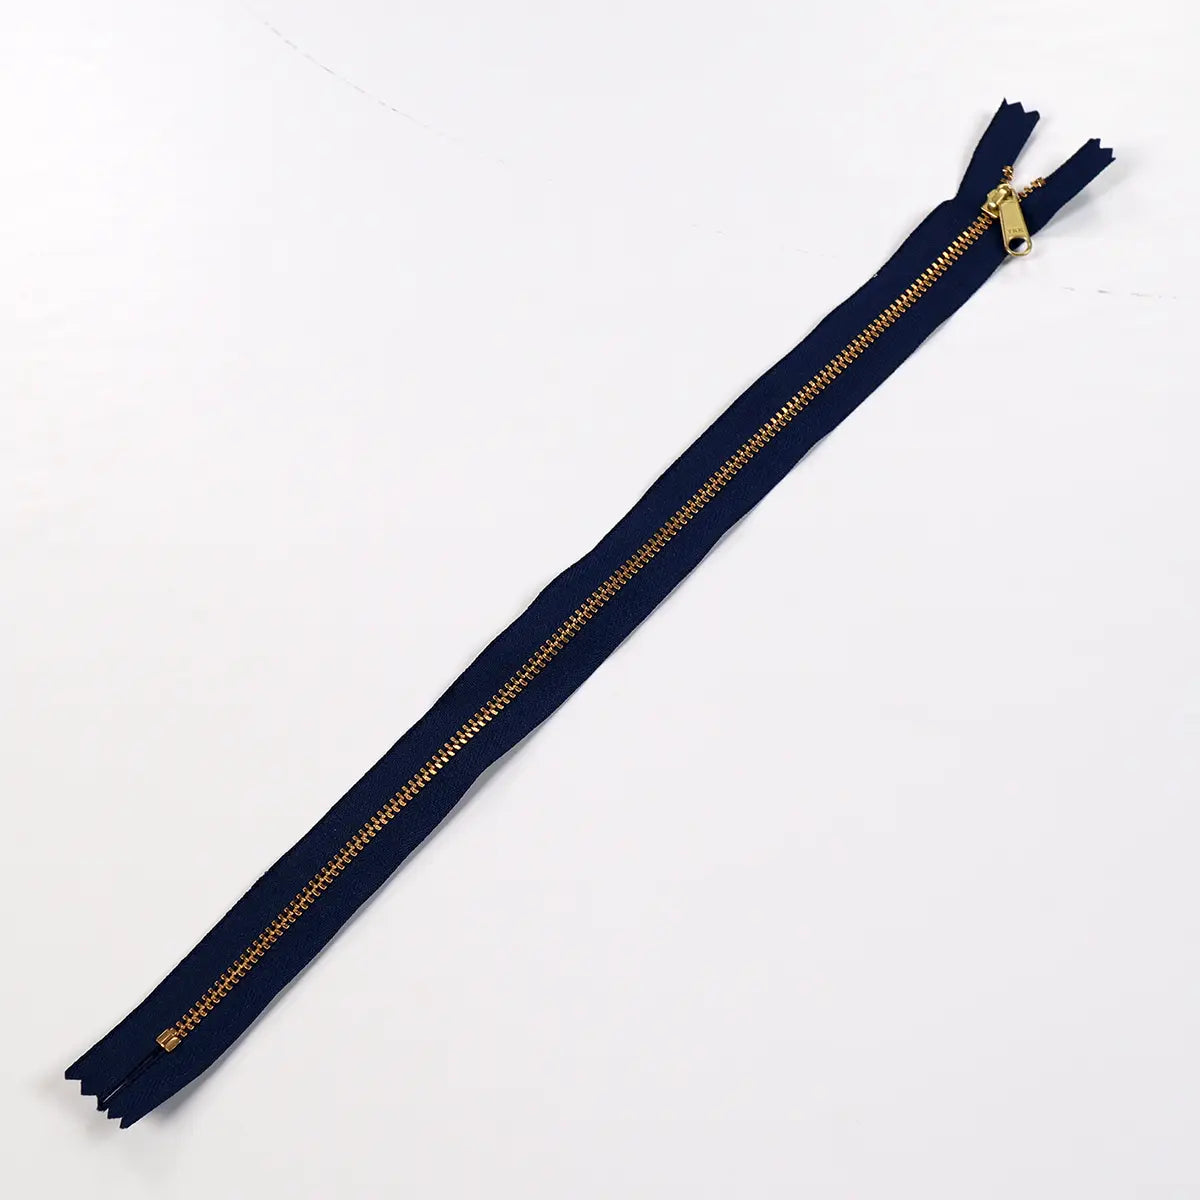 YKK 4.5 Brass Bag Zipper Long Pull 14 Inch